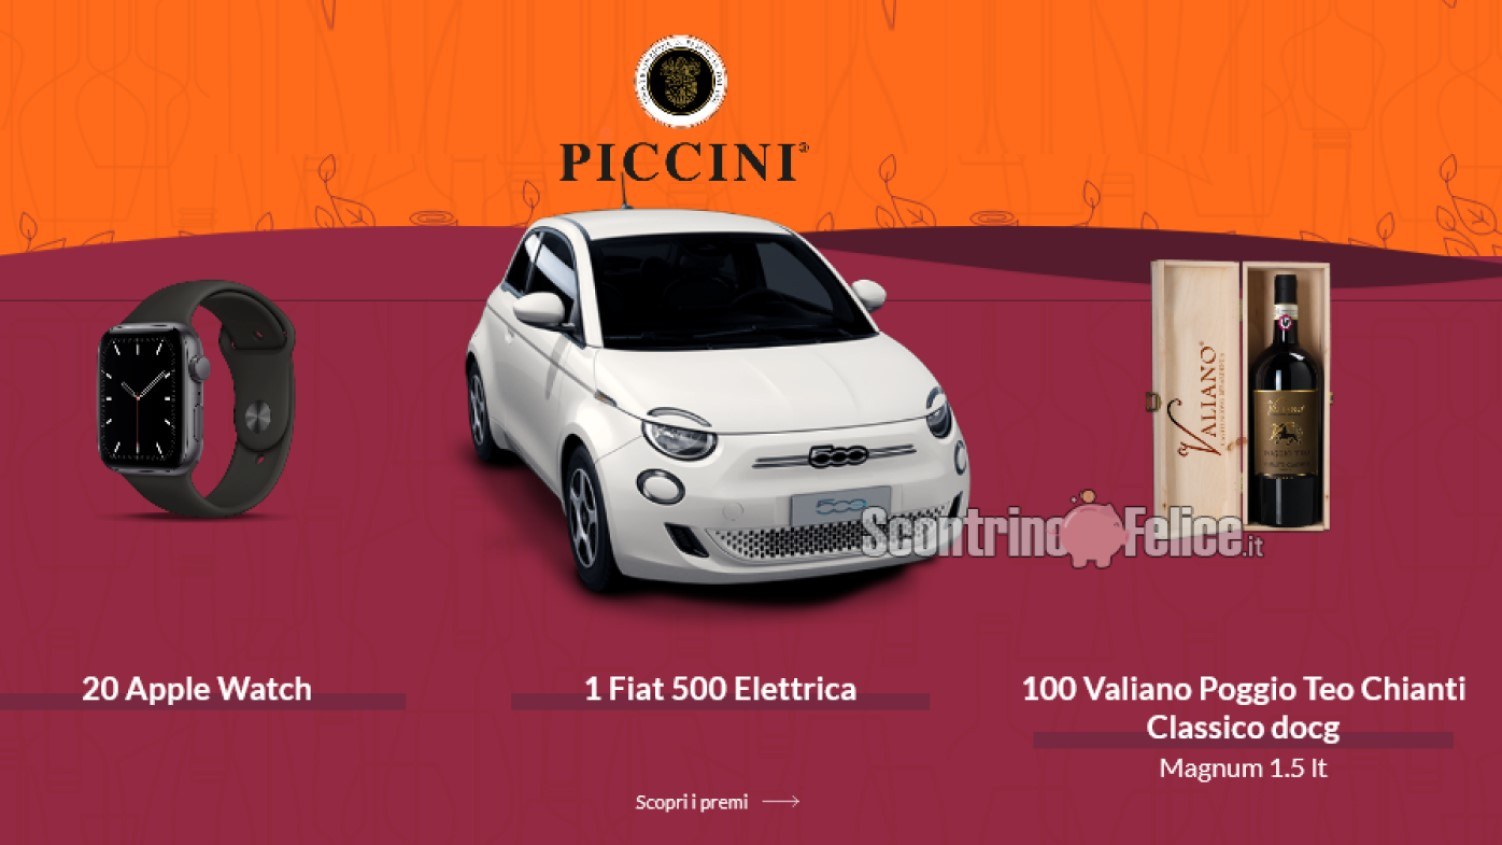 Concorso Piccini "Un brindisi da incorniciare": in palio buoni sconto, Fiat 500, Apple Watch e bottiglie magnum